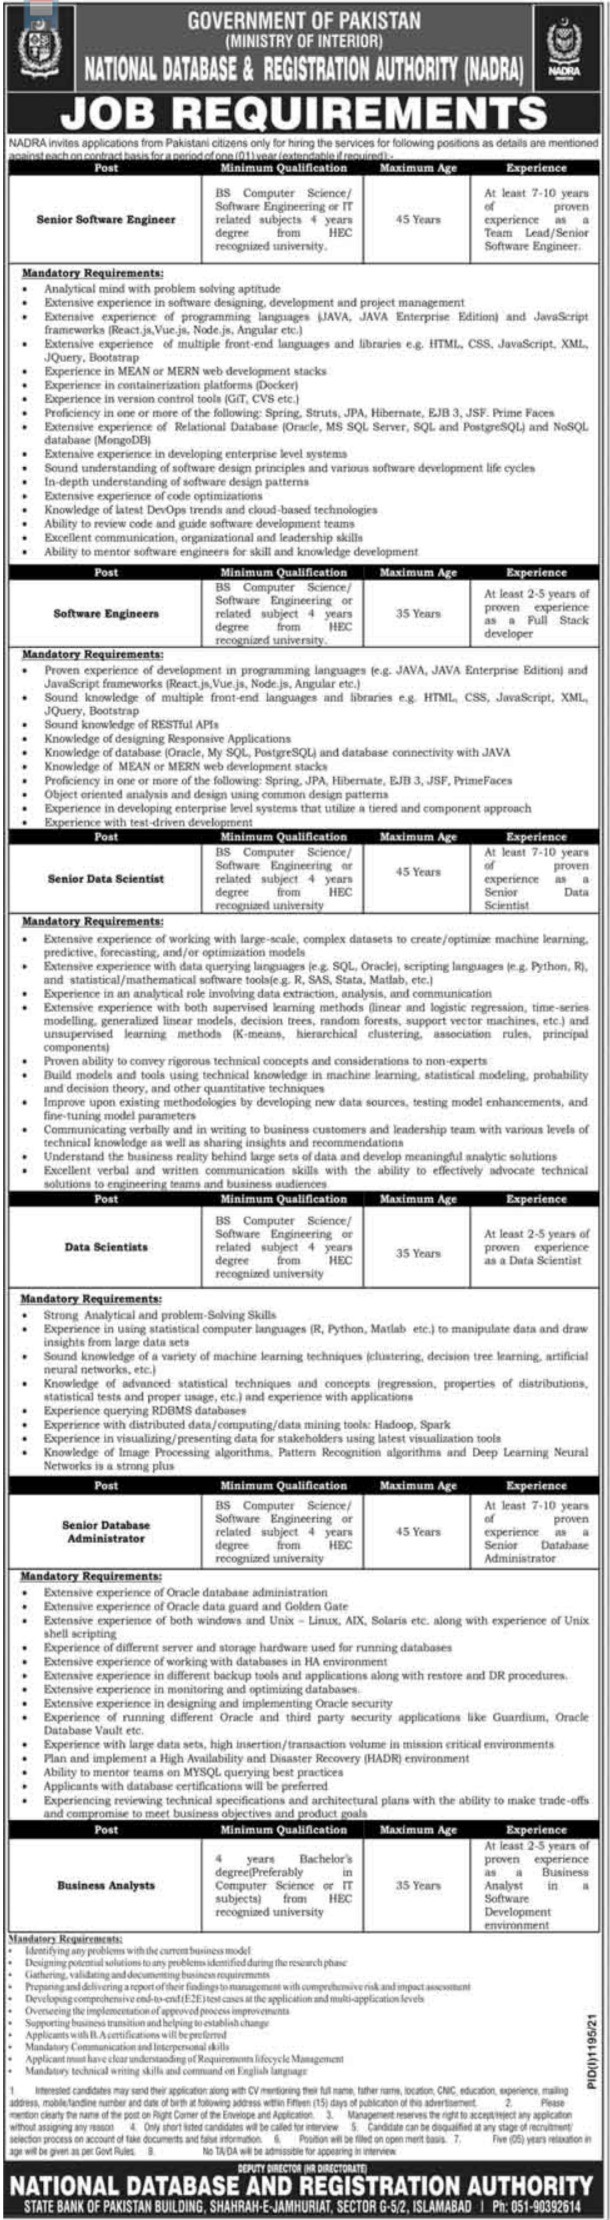 NADRA Islamabad Jobs 2021